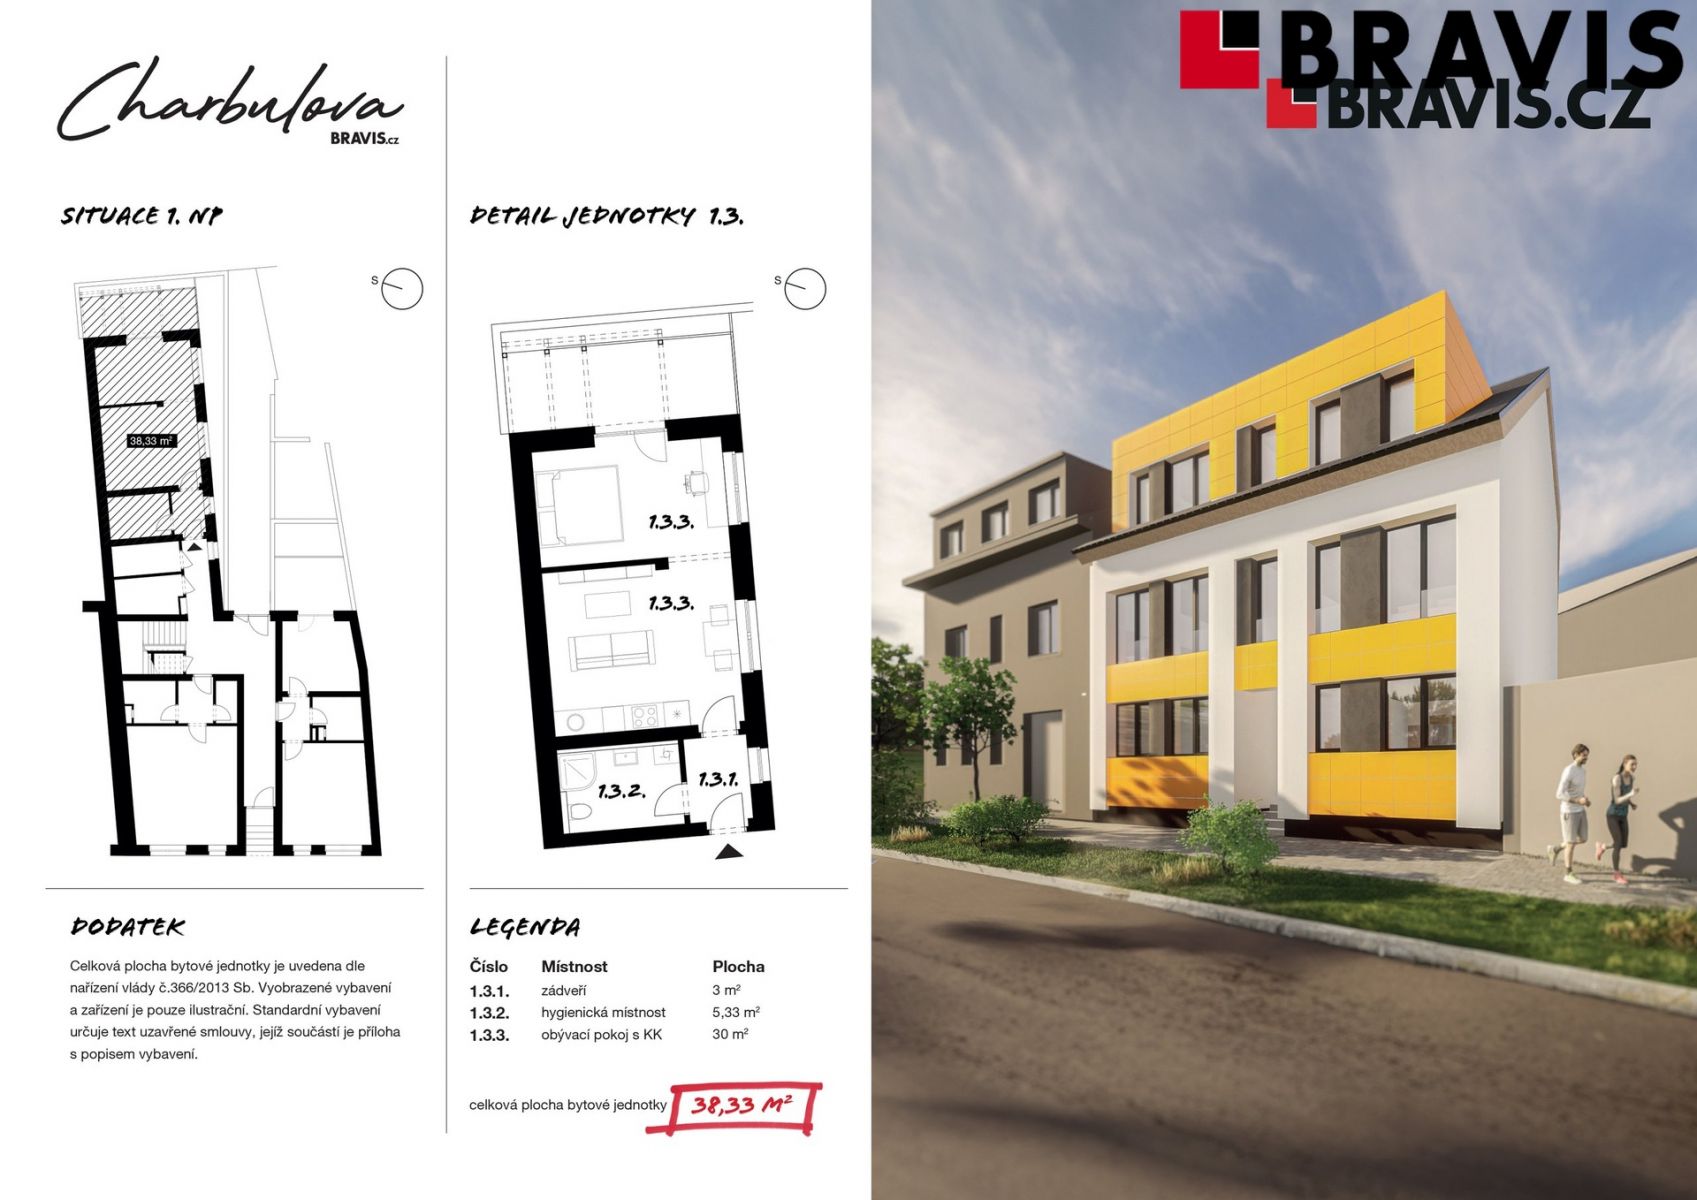 Prodej novostavby bytu 1+kk, ulice Charbulova, Brno - Černovice, parkování, obrázek č. 2